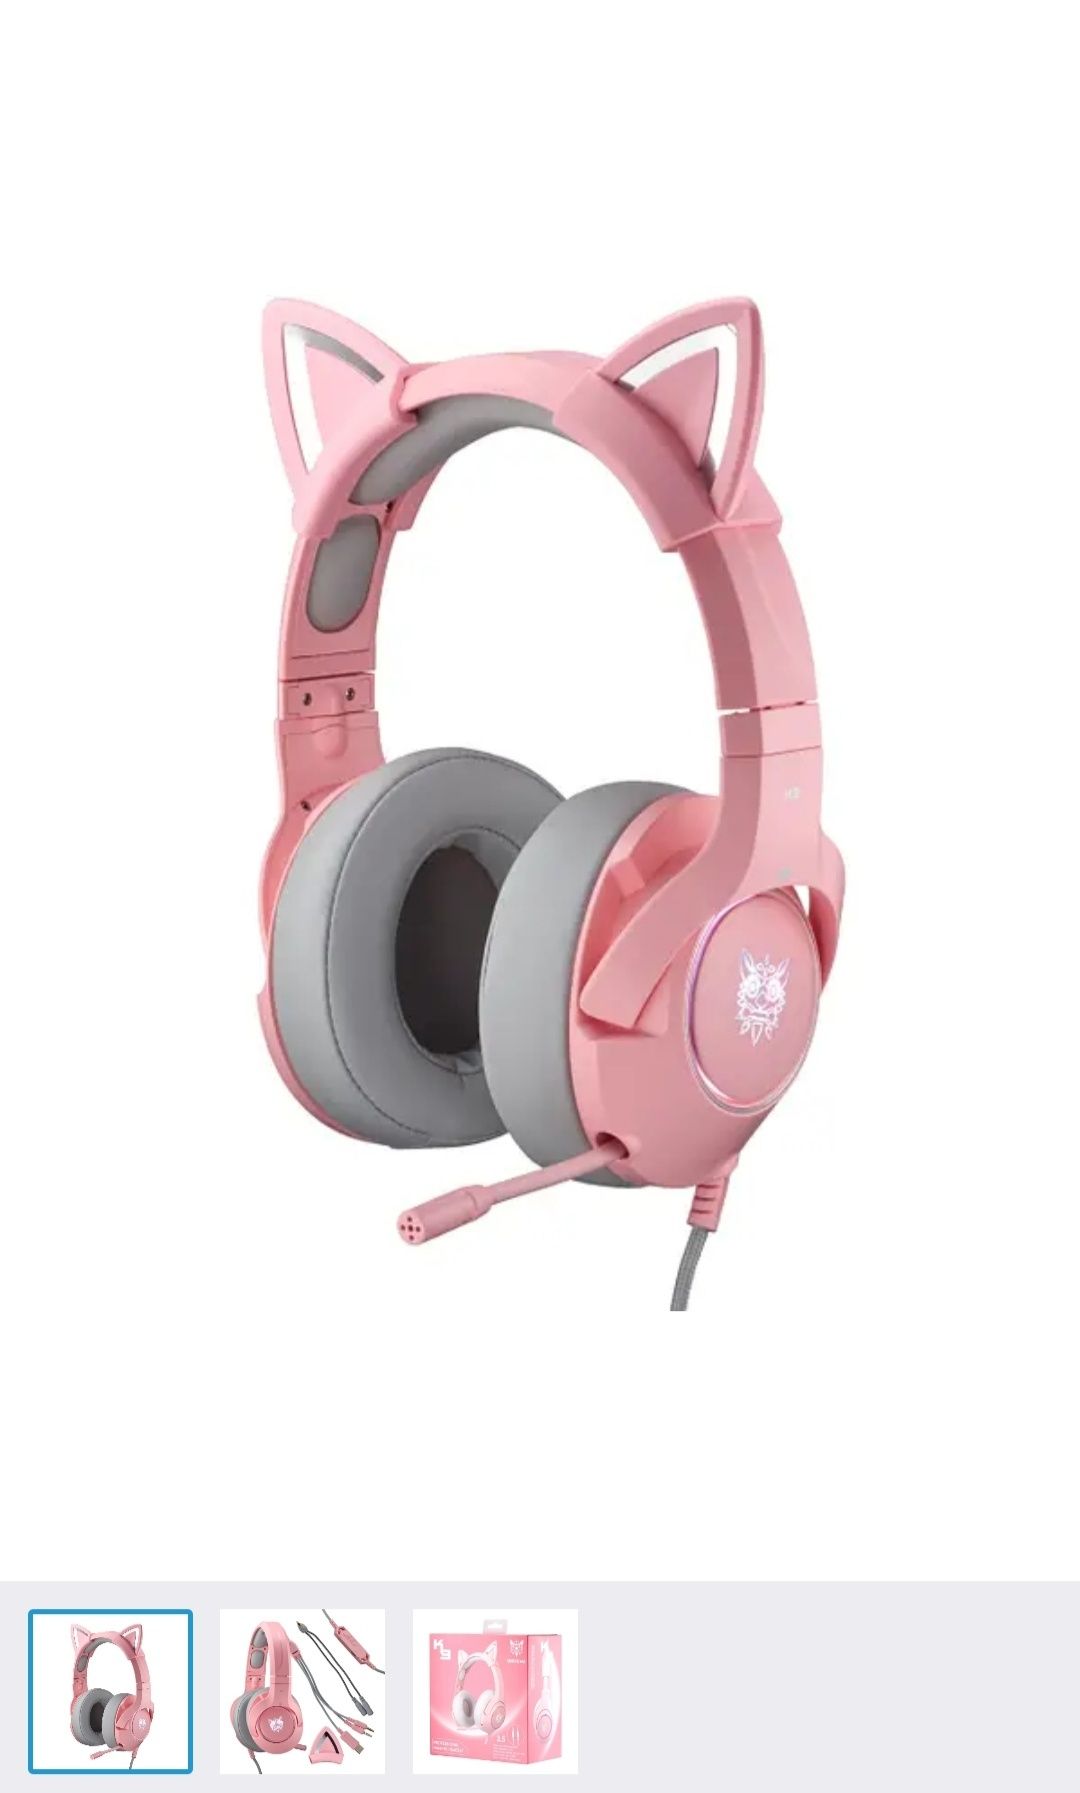 Навушники Onikuma K9 Cat Ear 3.5mm Pink